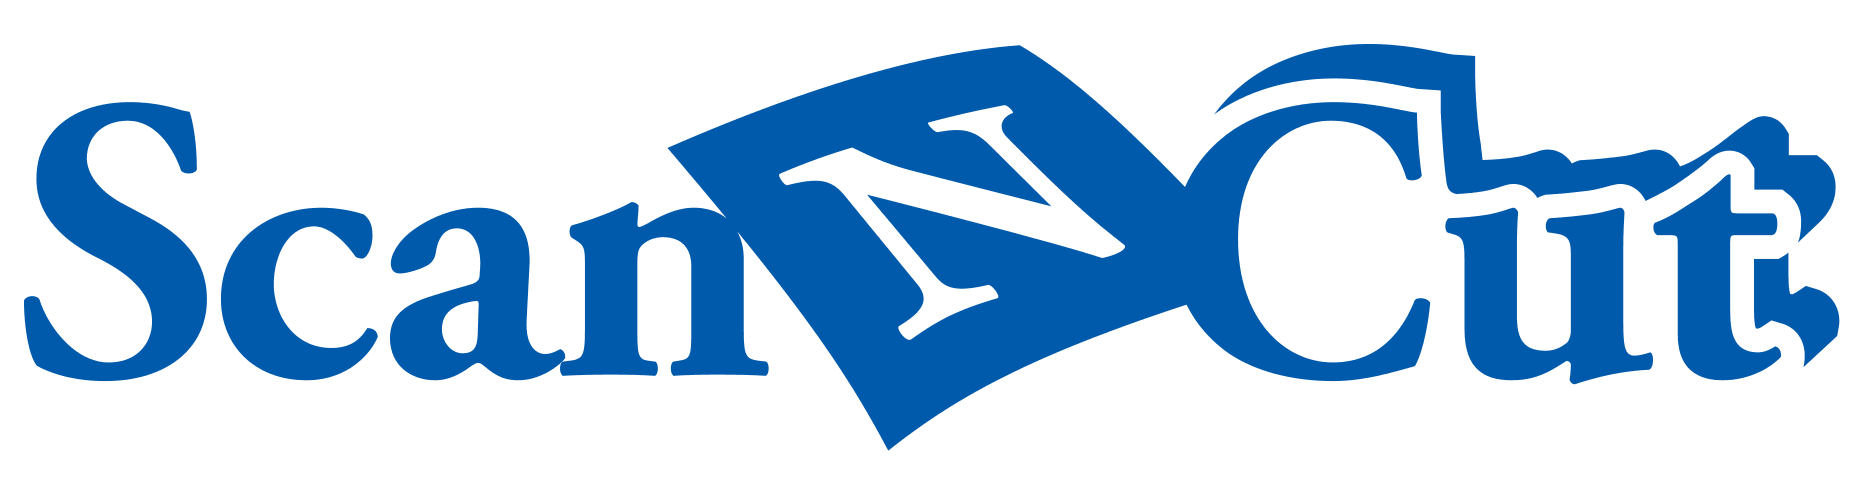 Scan n cut logo